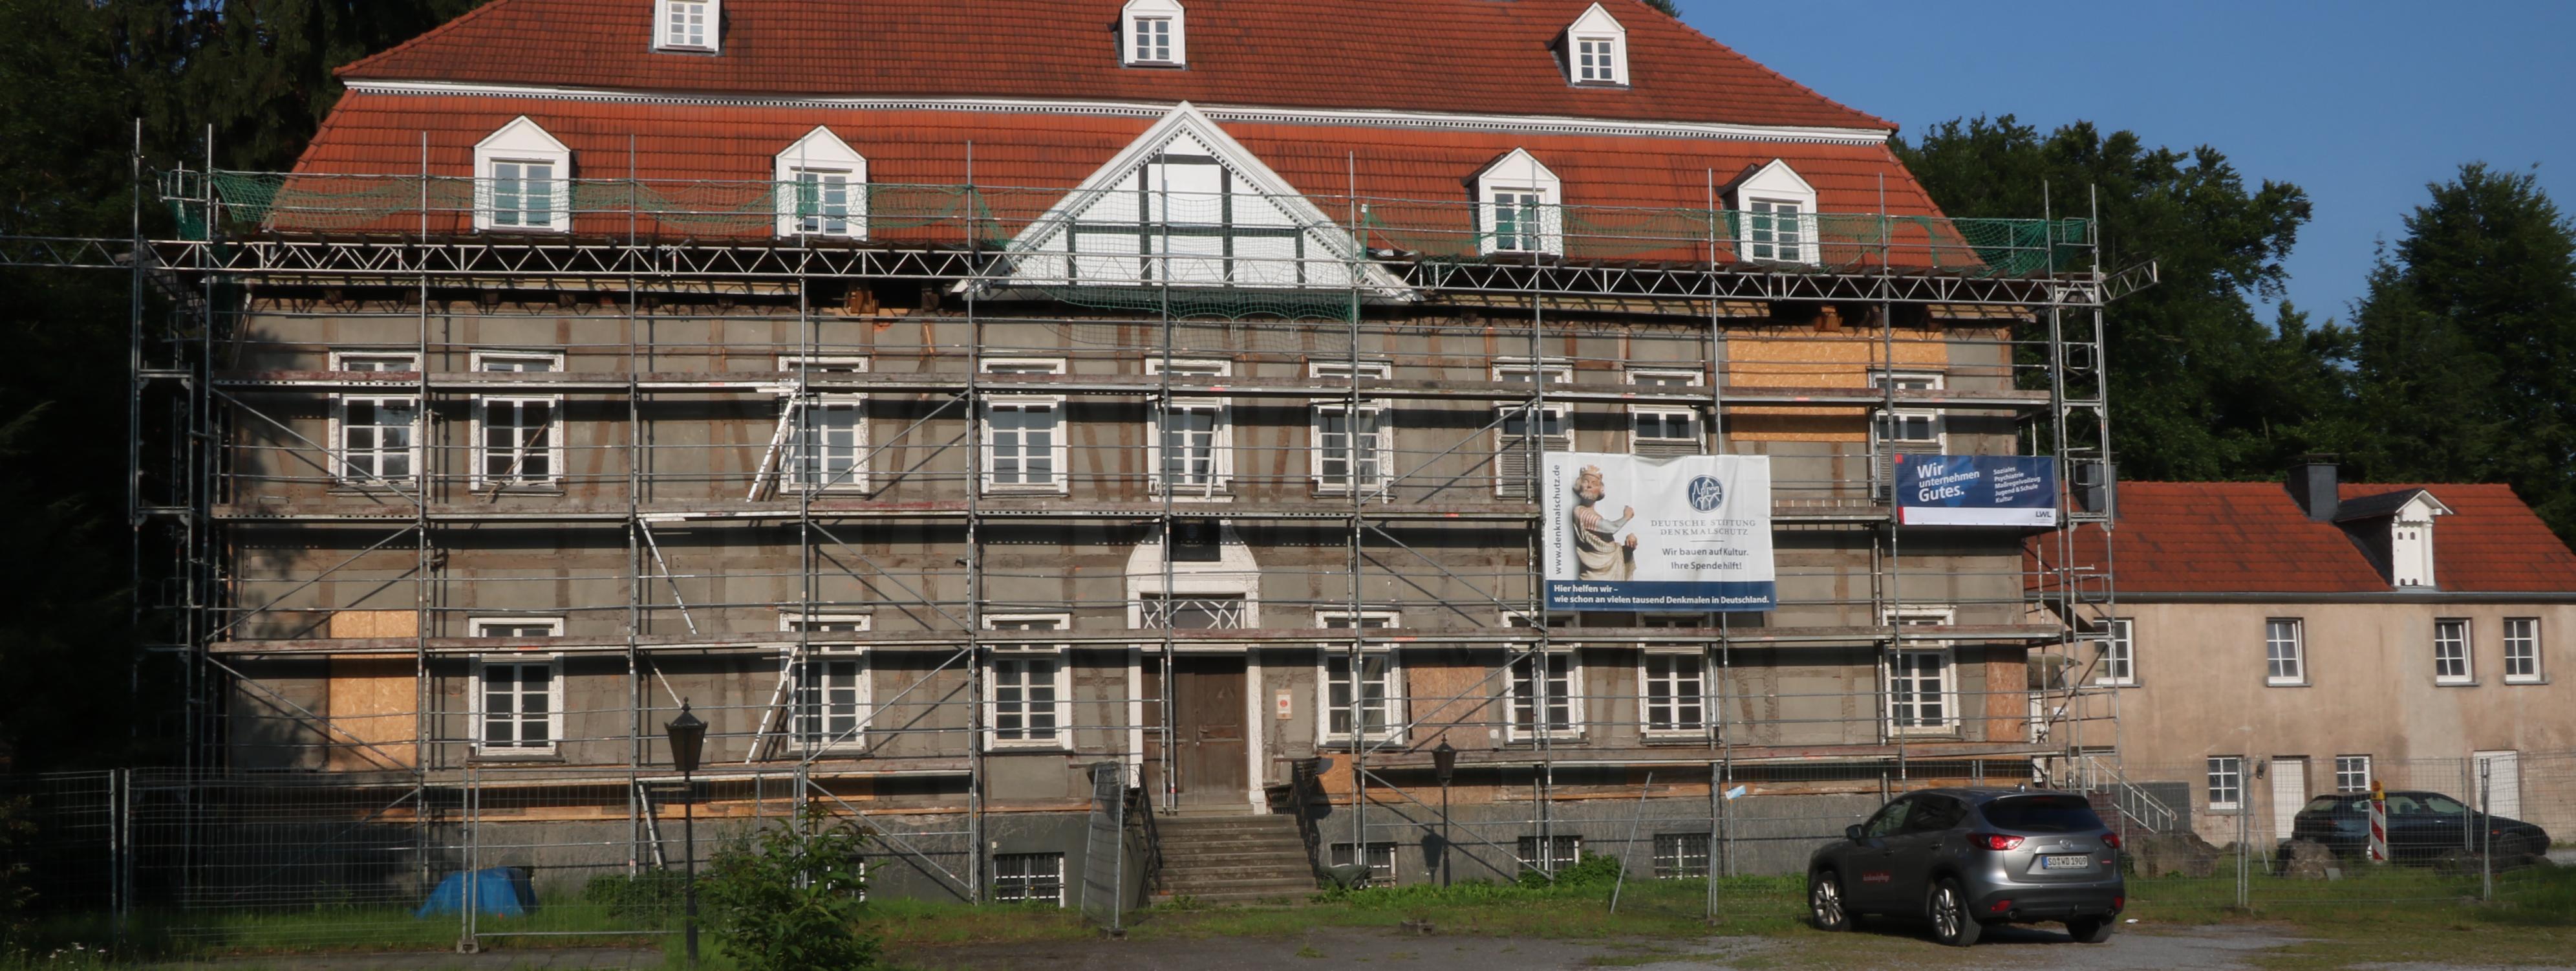 Gut Rödinghausen - hier entsteht das neue Museum für Industriegeschichte